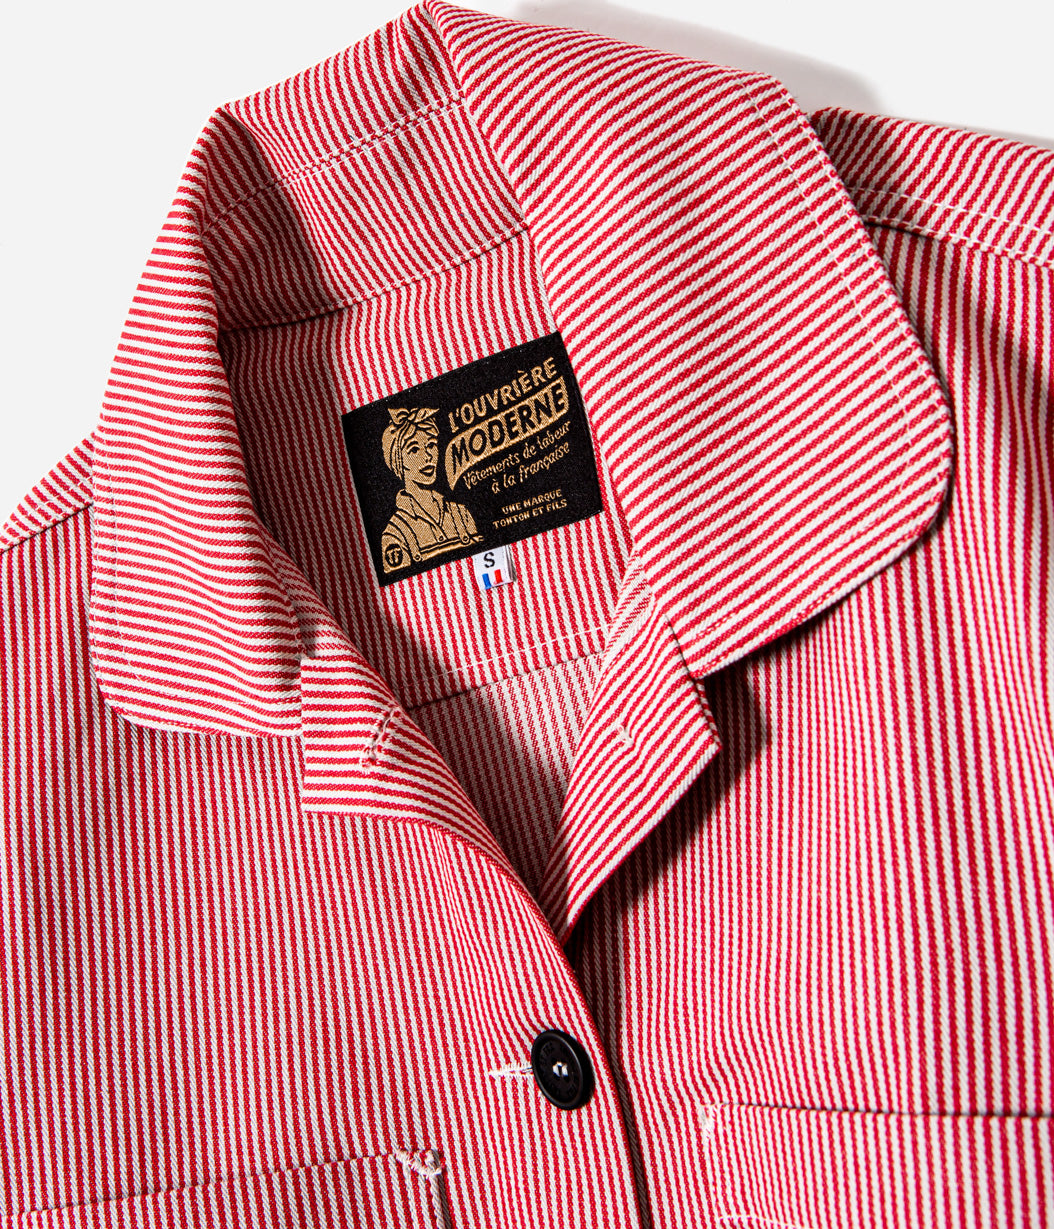 Tonton et Fils - La veste femme "L'Ouvrière" de l'Ouvrière Moderne - Denim Hickory rouge et écru - Fabriquée en France - Vue sur l'encolure ouverte